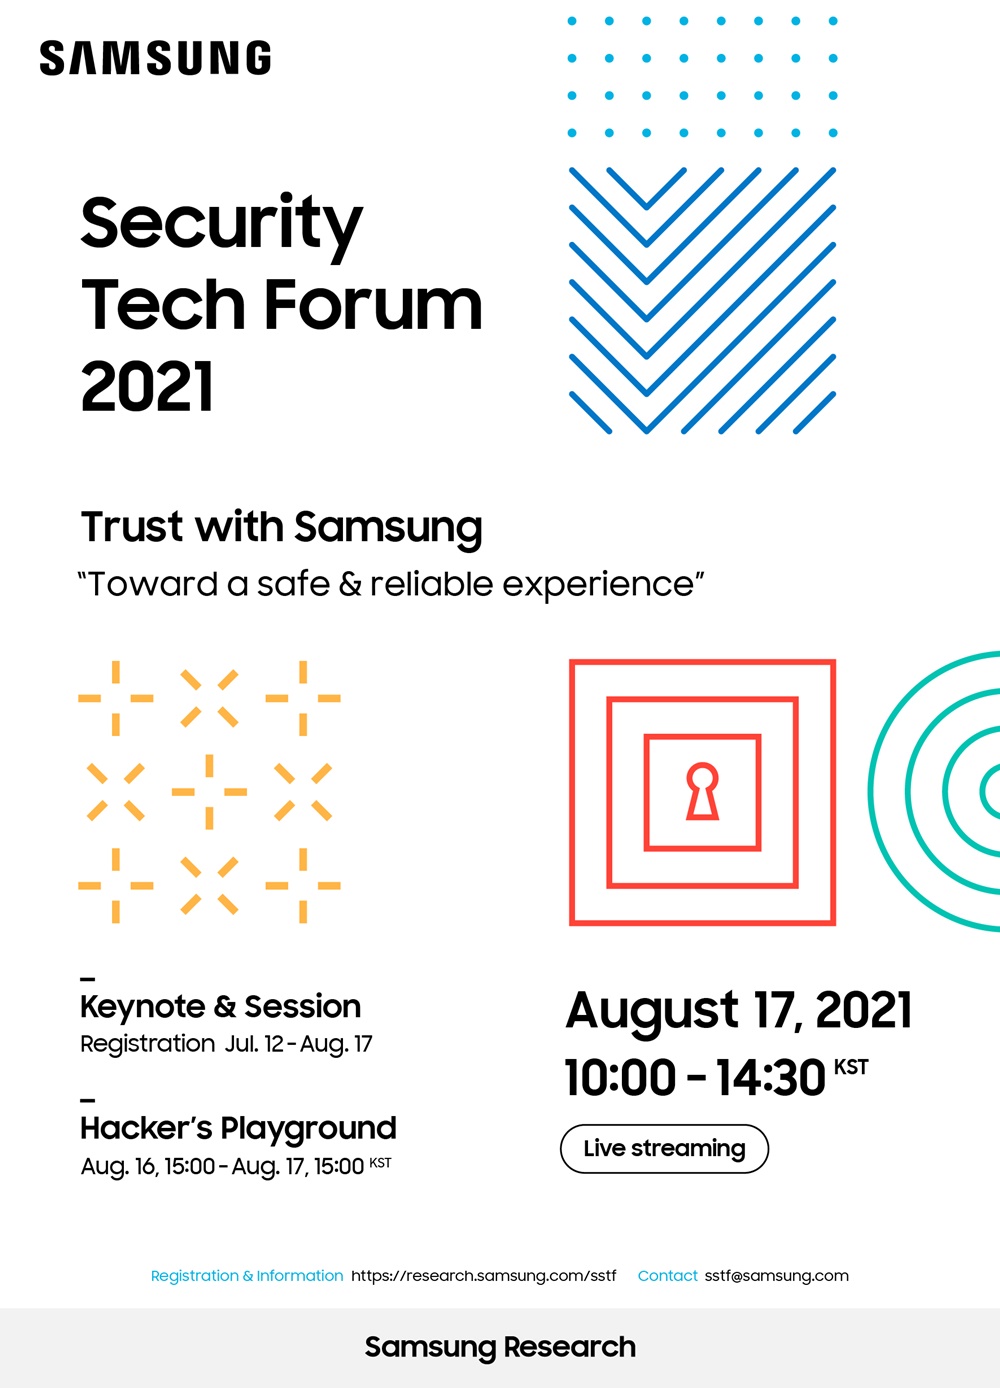 1. 삼성보안기술포럼 2021 포스터(화이트)